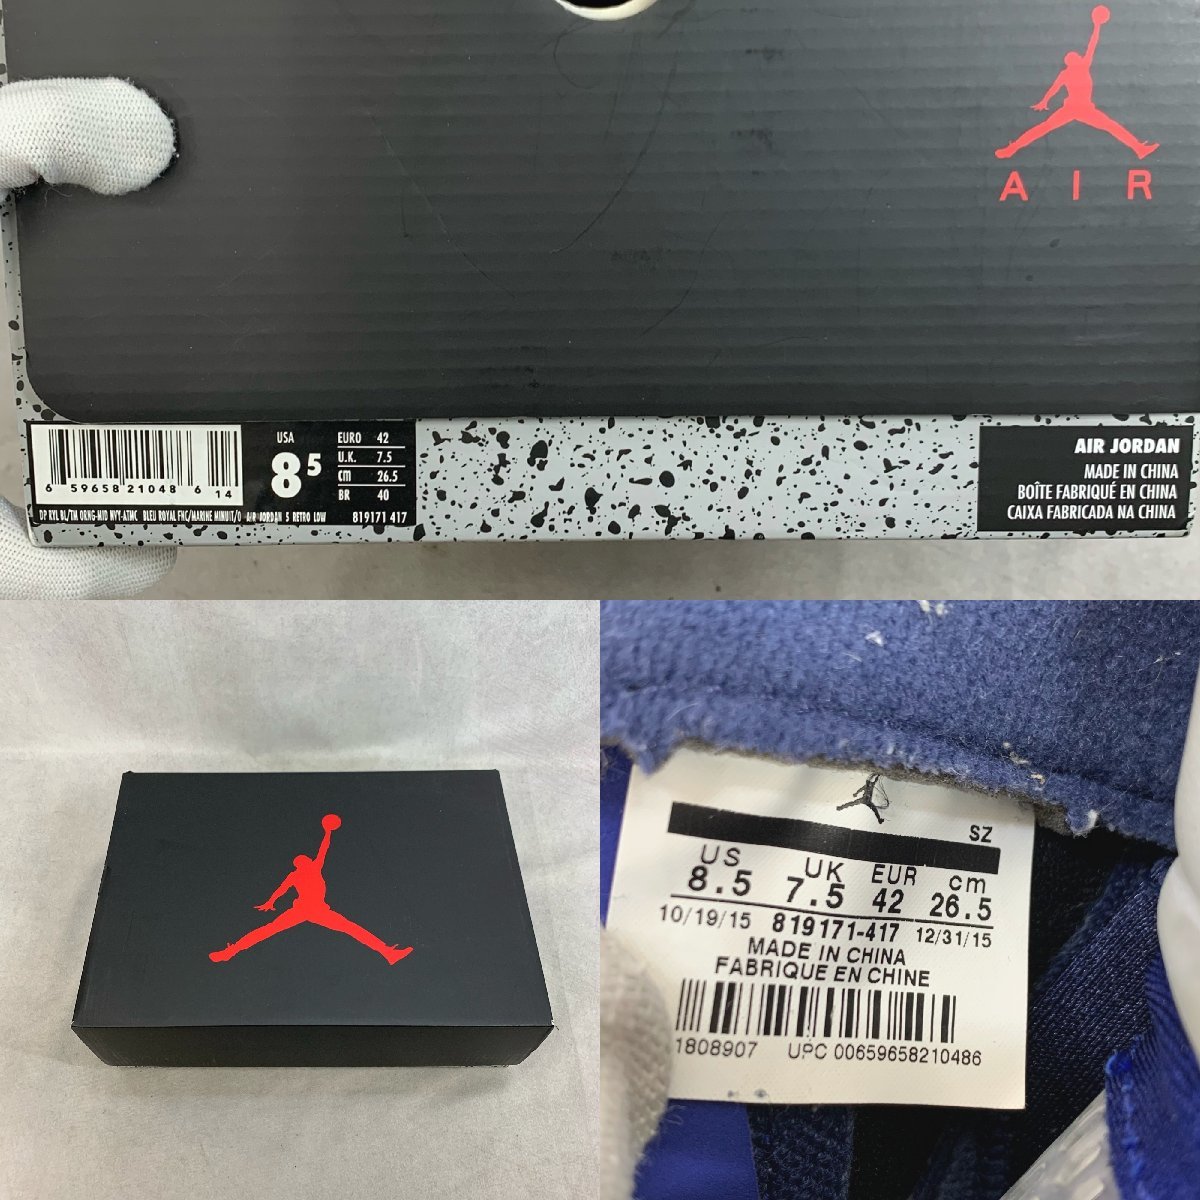 NIKE AIR JORDAN 5 RETRO LOW 819171-417 Knicks Nike воздушный Jordan спортивные туфли мужской 26.5cm голубой orange обувь 